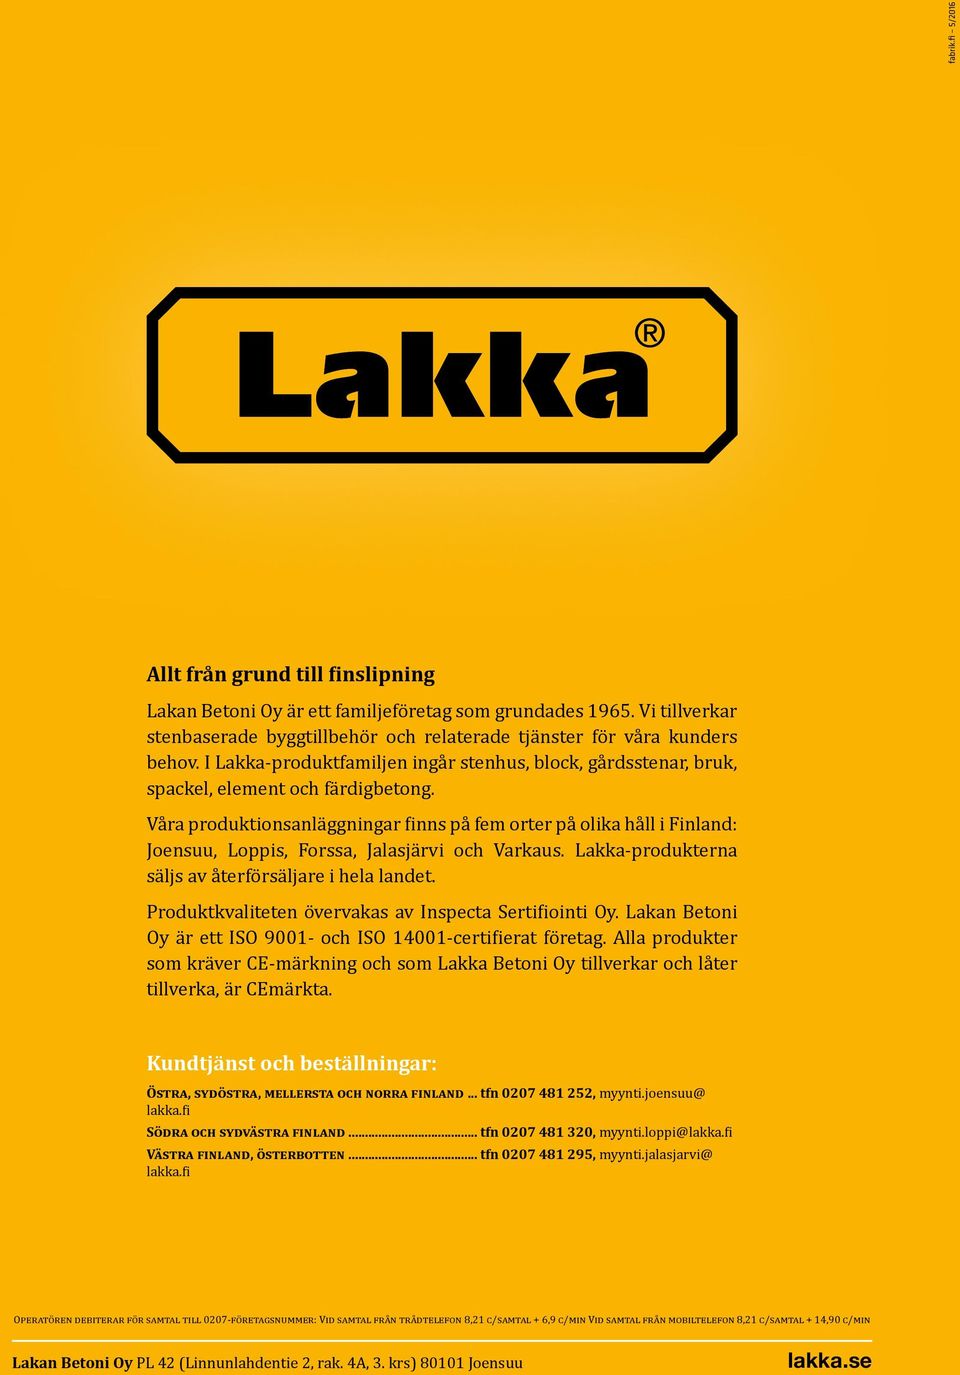 Våra produktionsanläggningar finns på fem orter på olika håll i Finland: Joensuu, Loppis, Forssa, Jalasjärvi och Varkaus. Lakka-produkterna säljs av återförsäljare i hela landet.